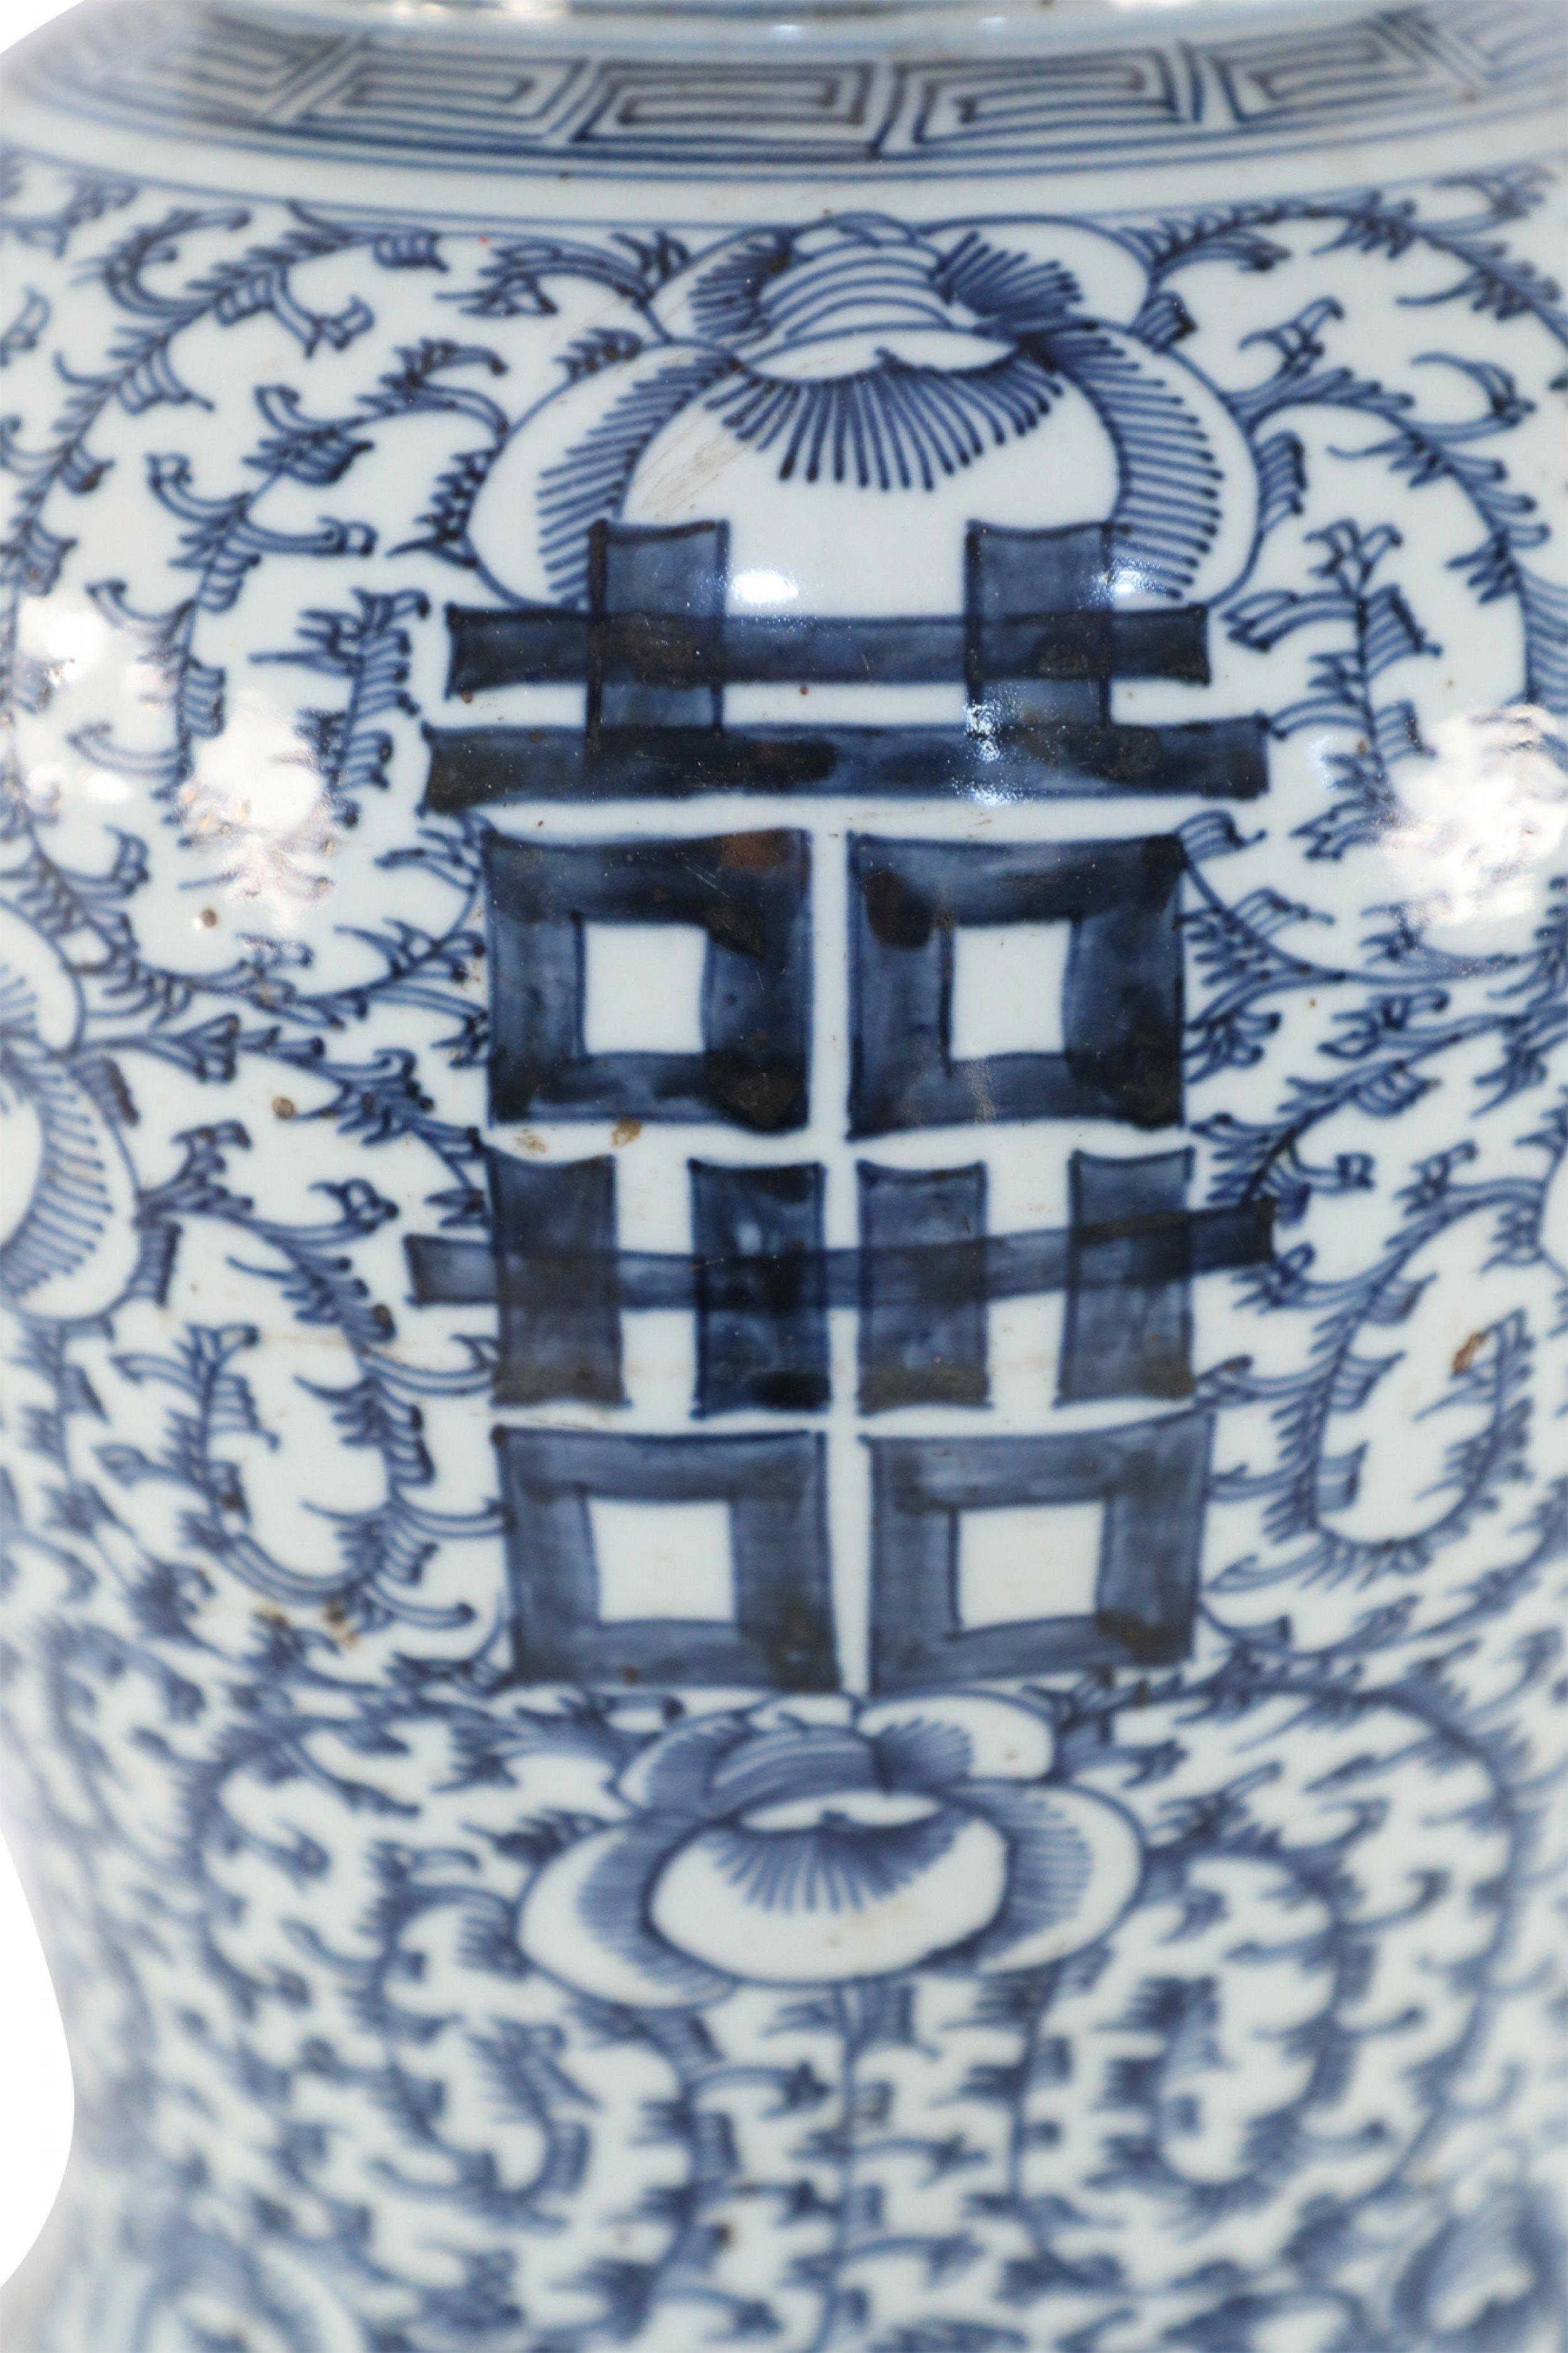 Antike chinesische Ingwerdose mit Deckel (frühes 20. Jahrhundert) aus Porzellan mit dunkelblauem Ranken- und Blumenmotiv auf weißem Grund und fetten blauen Schriftzeichen auf 4 Seiten.
 